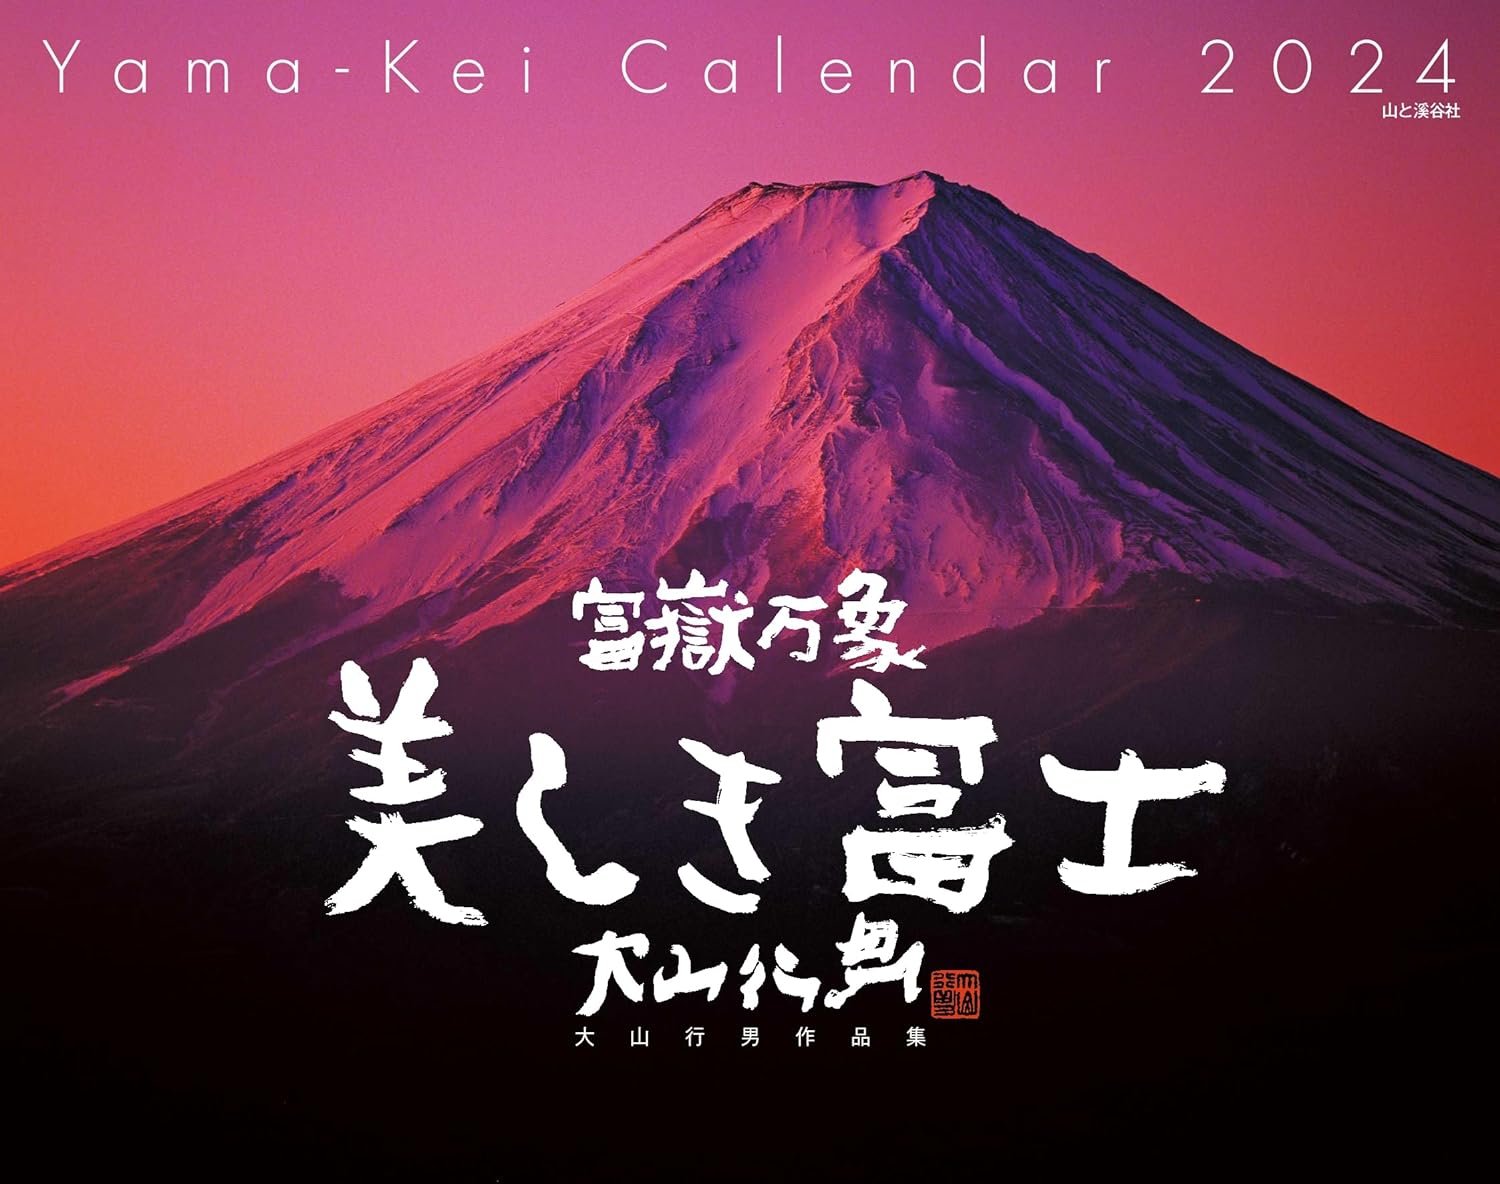 カレンダー2024 富嶽万象 美しき富士 大山行男作品集